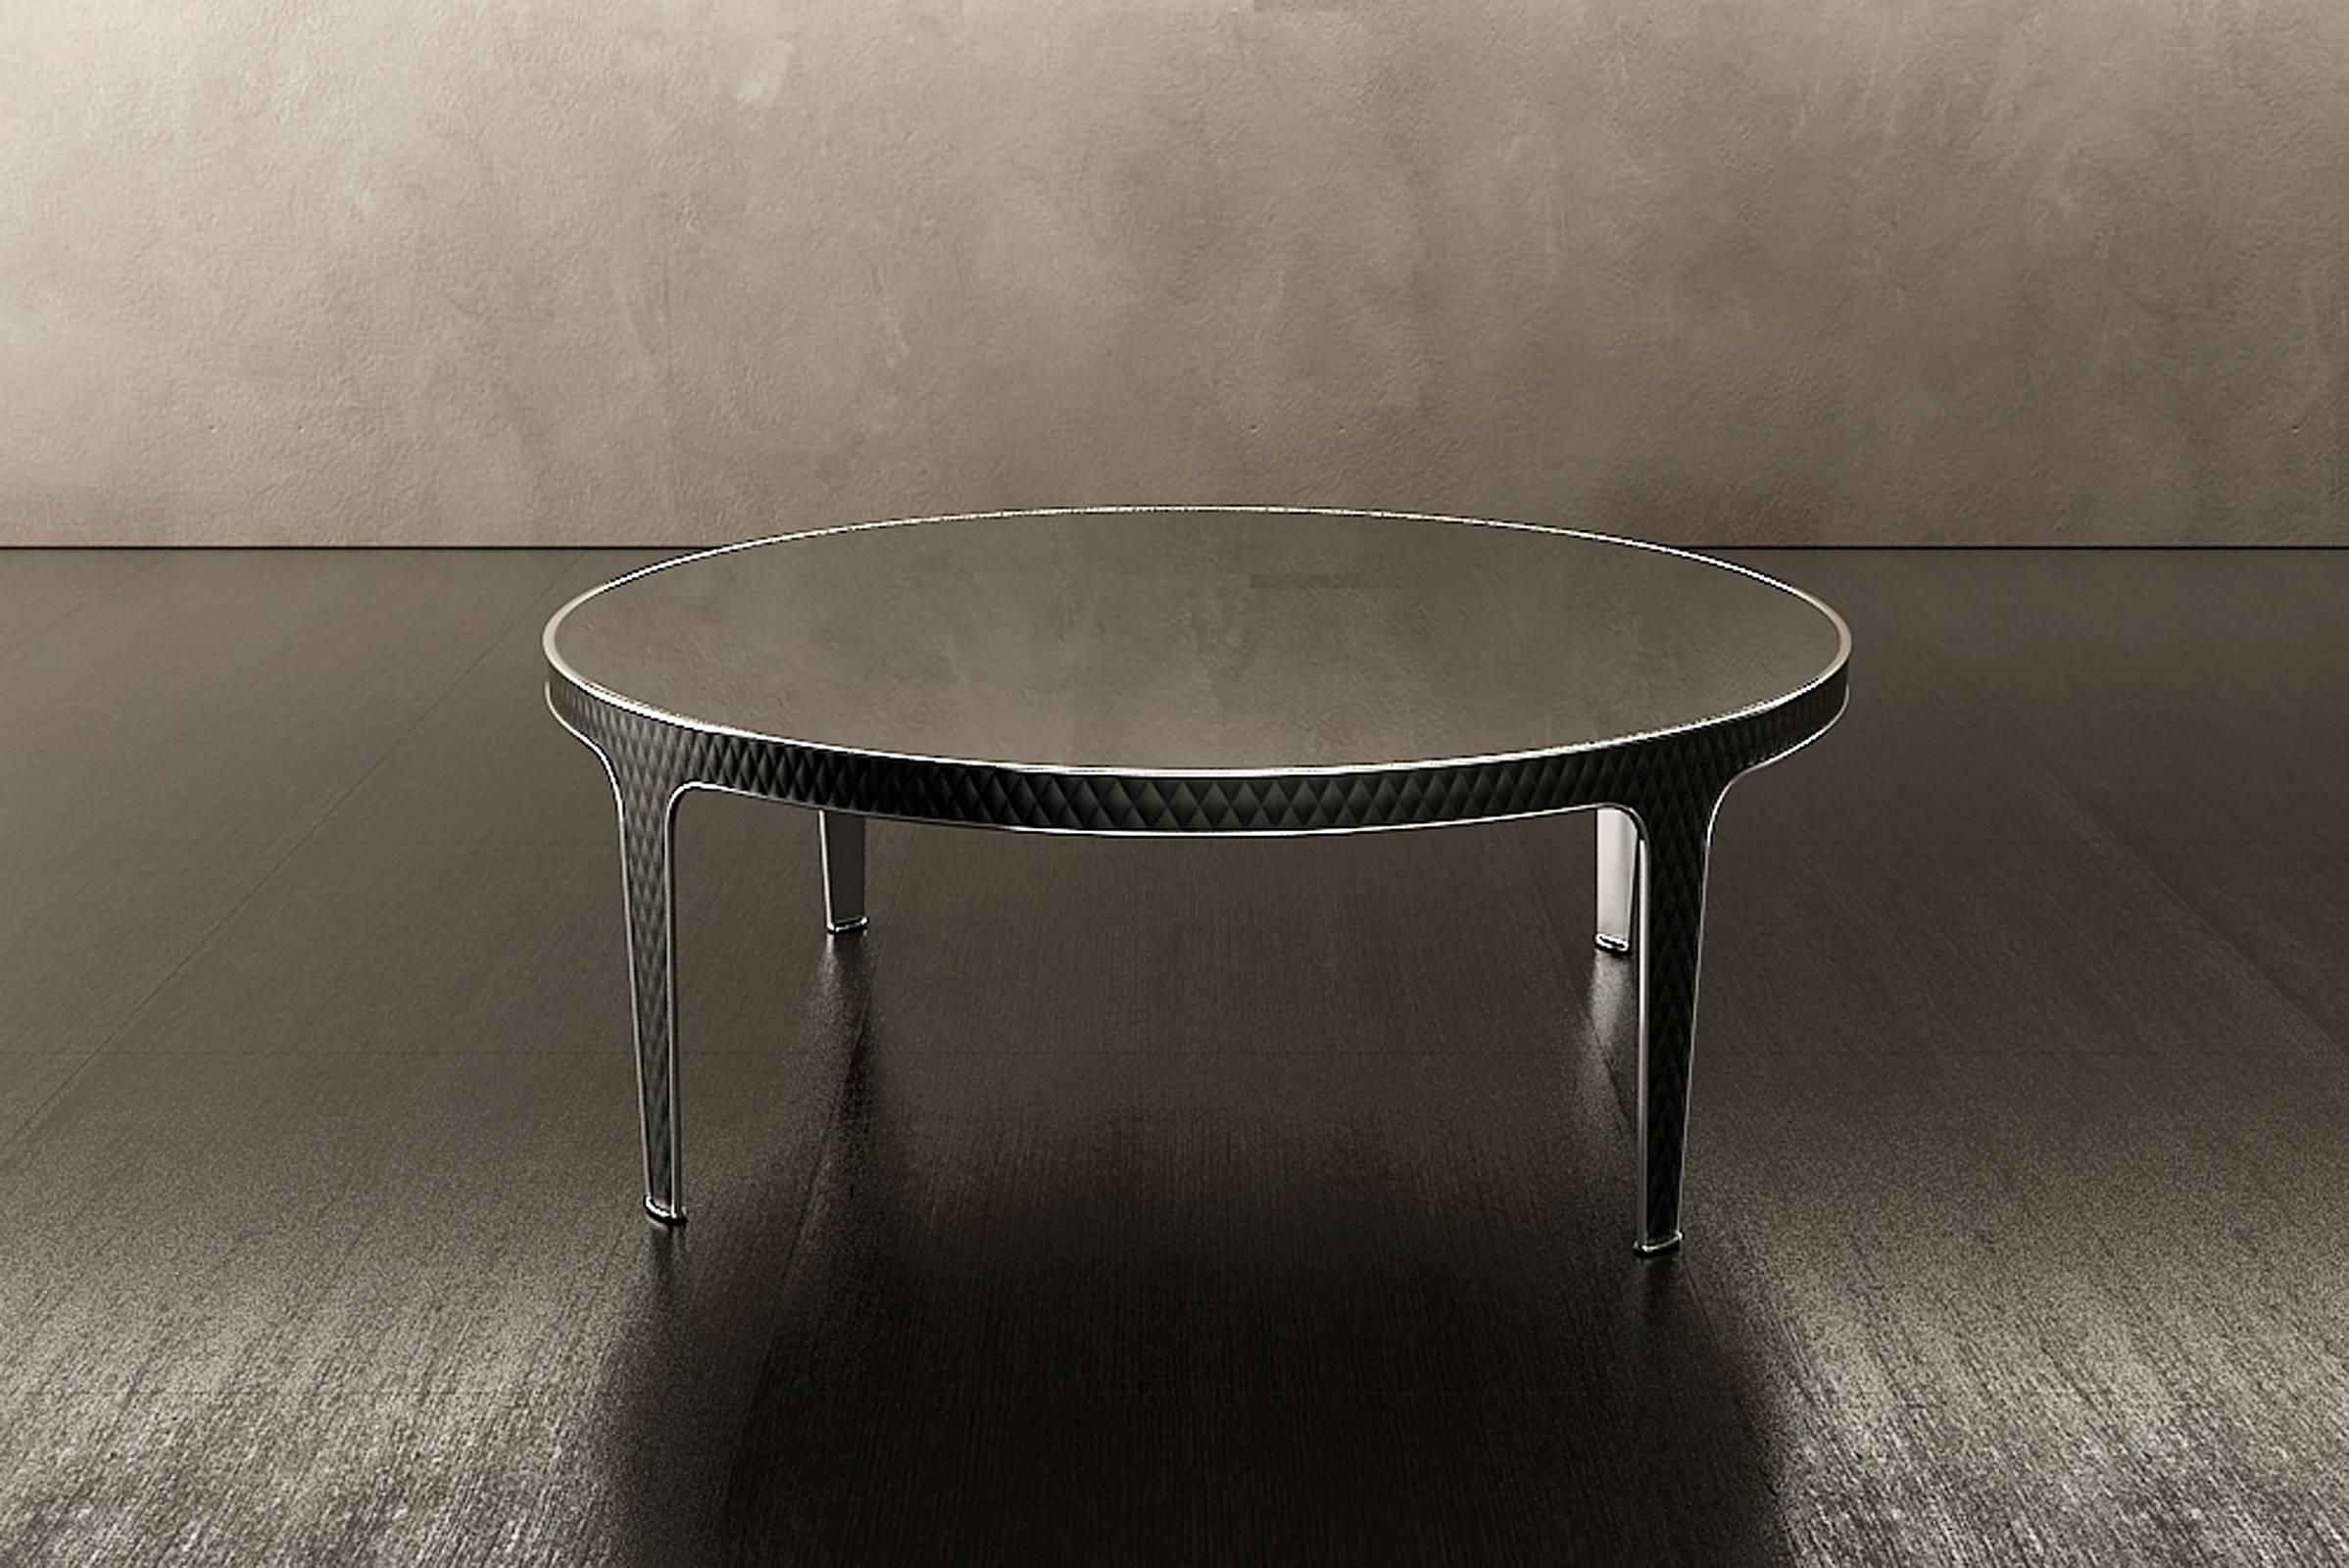 Runder Couchtisch Schatten
stahlbeine mit Lederbezug Kategorie C.
Marmor-Oberfläche.
Tisch mit Bronzestruktur erhältlich
und Glas- oder Lederplatte.
Erhältlich mit anderen Abmessungen.
